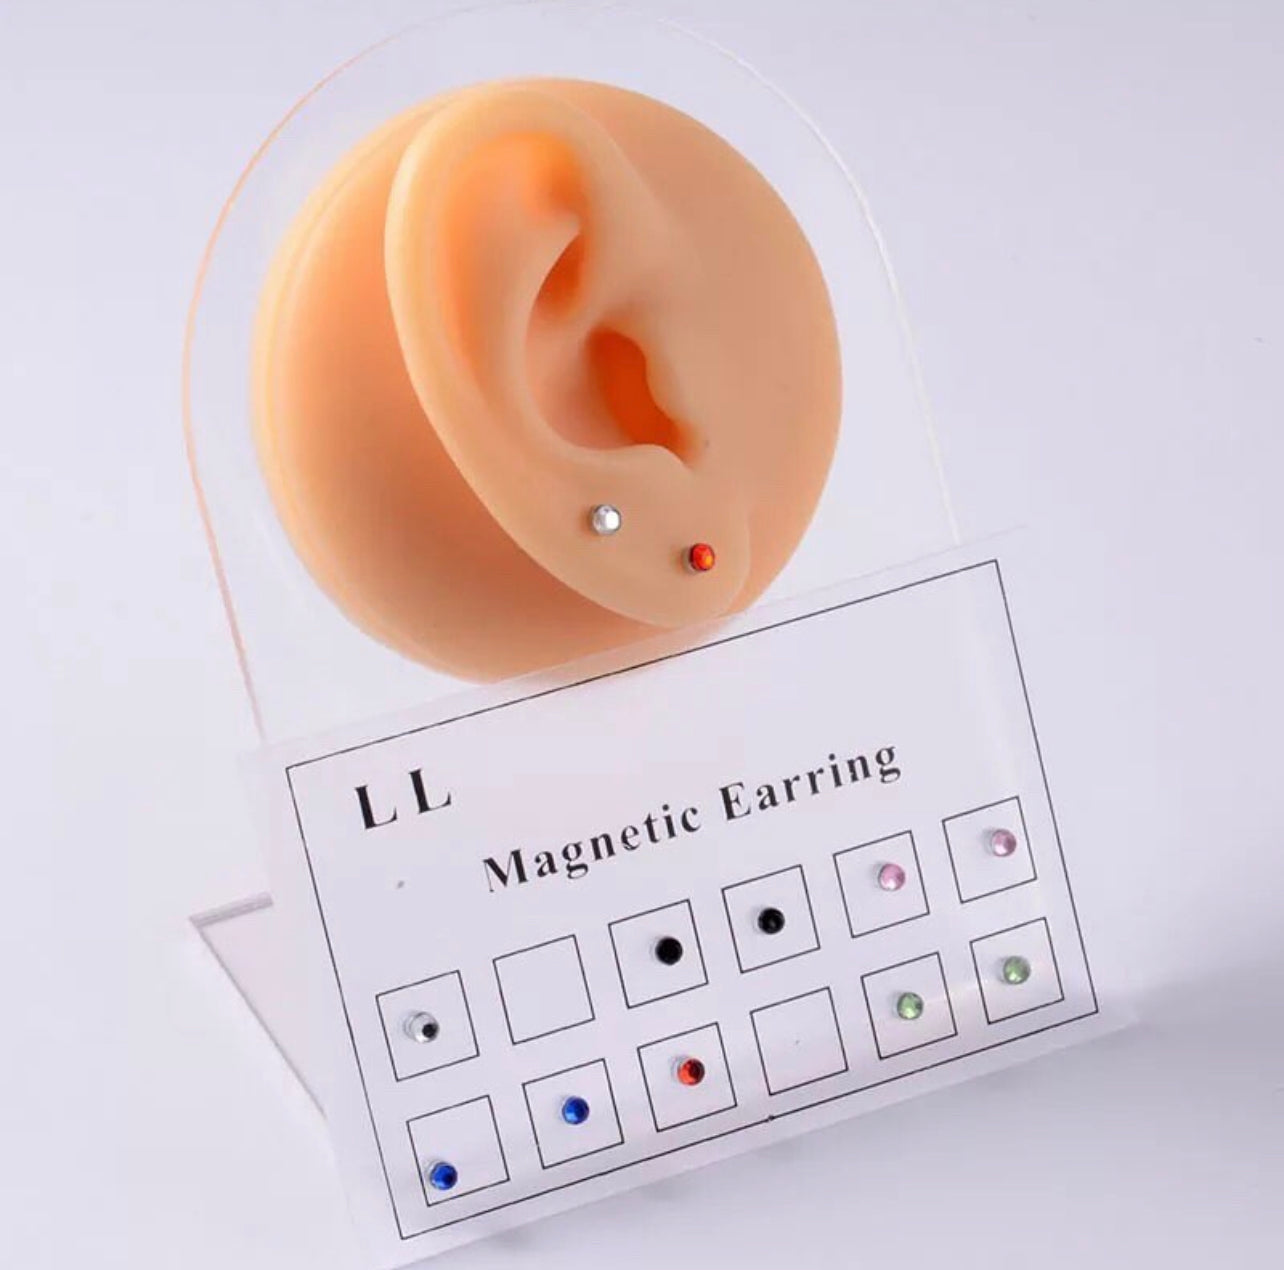 Set de aritos o piercings magneticos